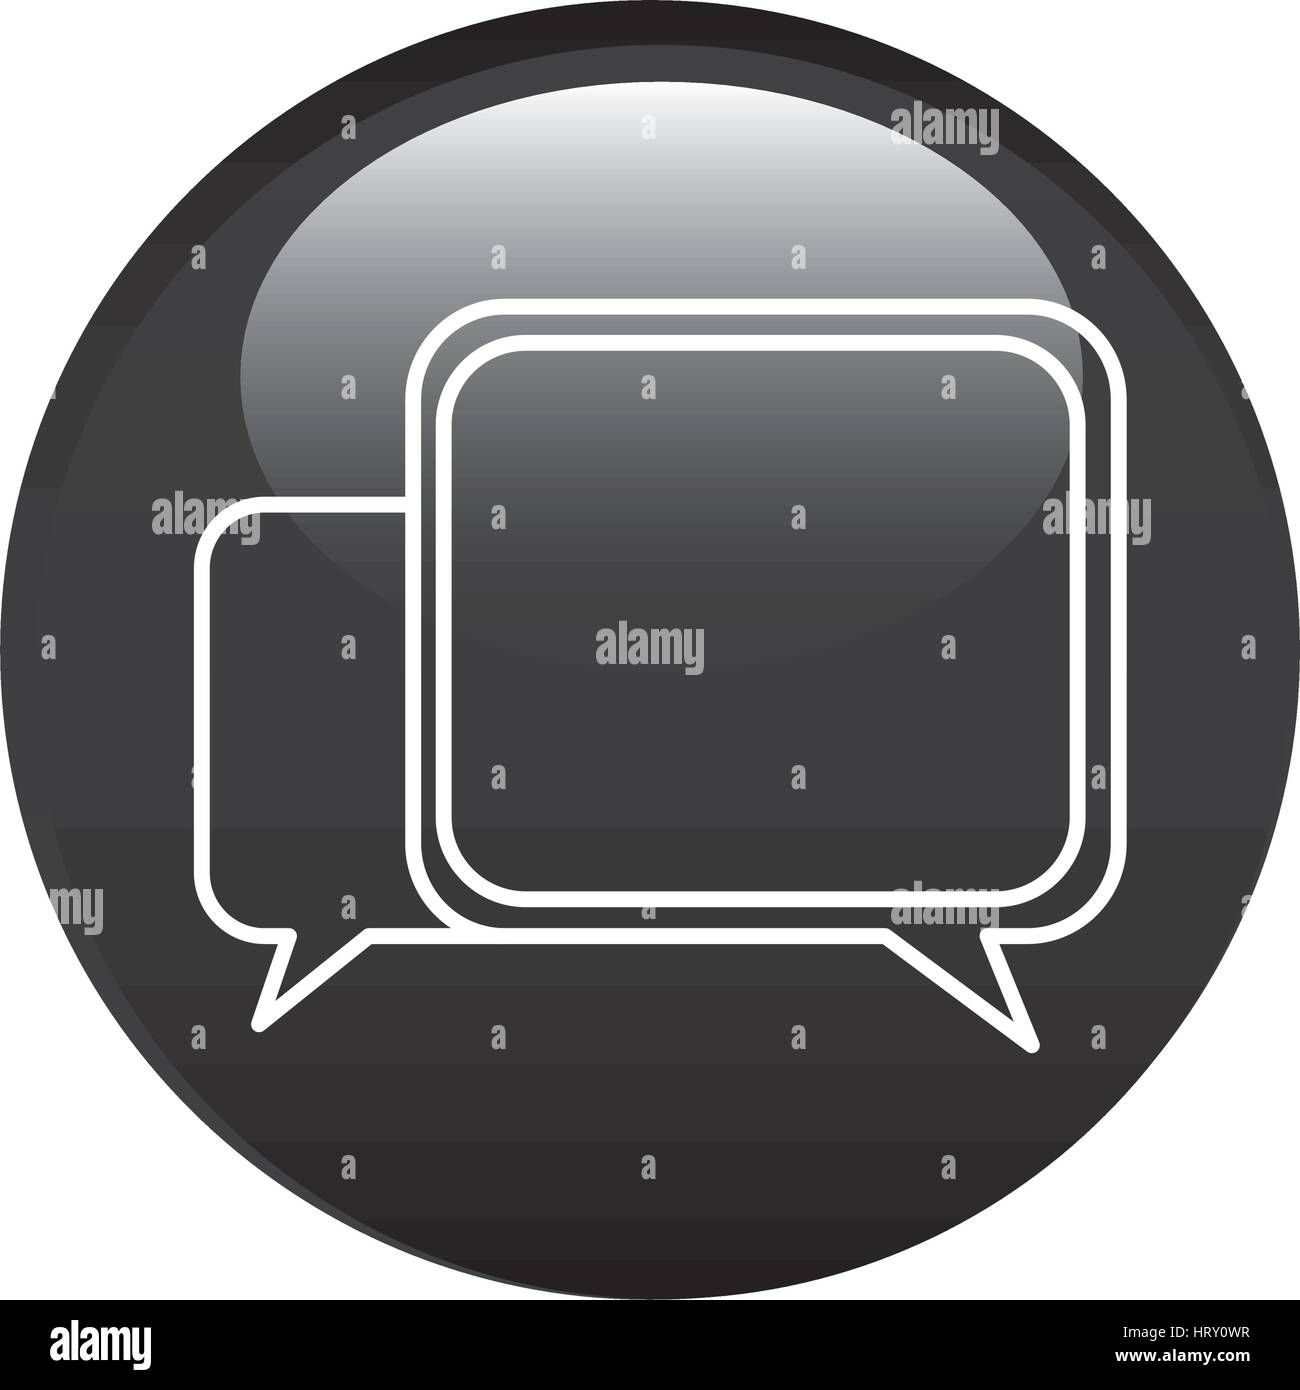 black circular frame with speech icon Stock Vector